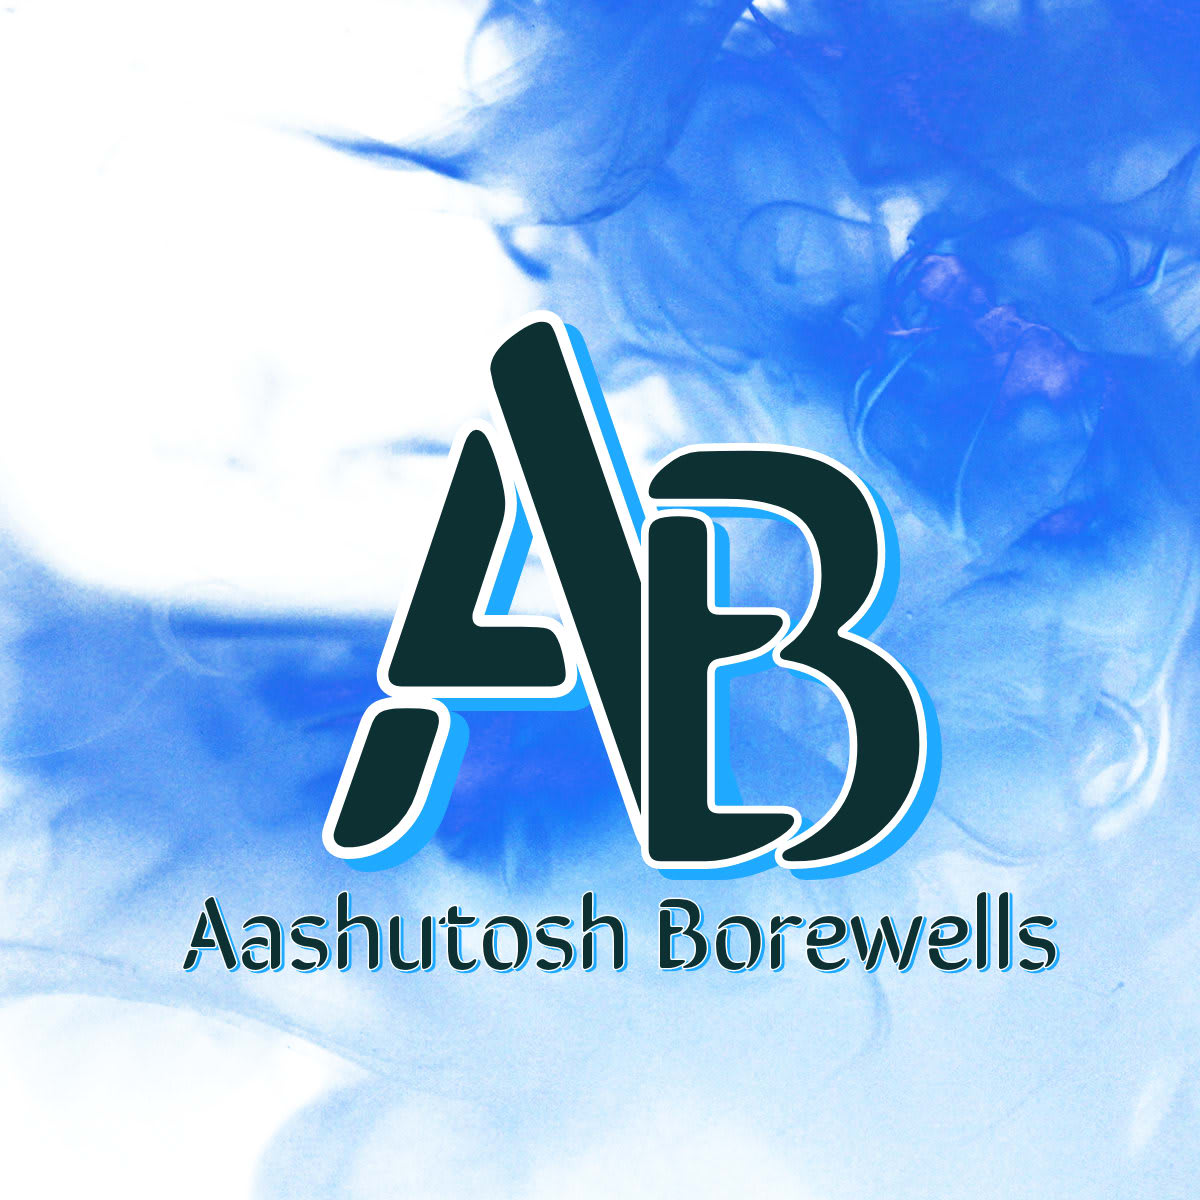 Aashutosh Borewells